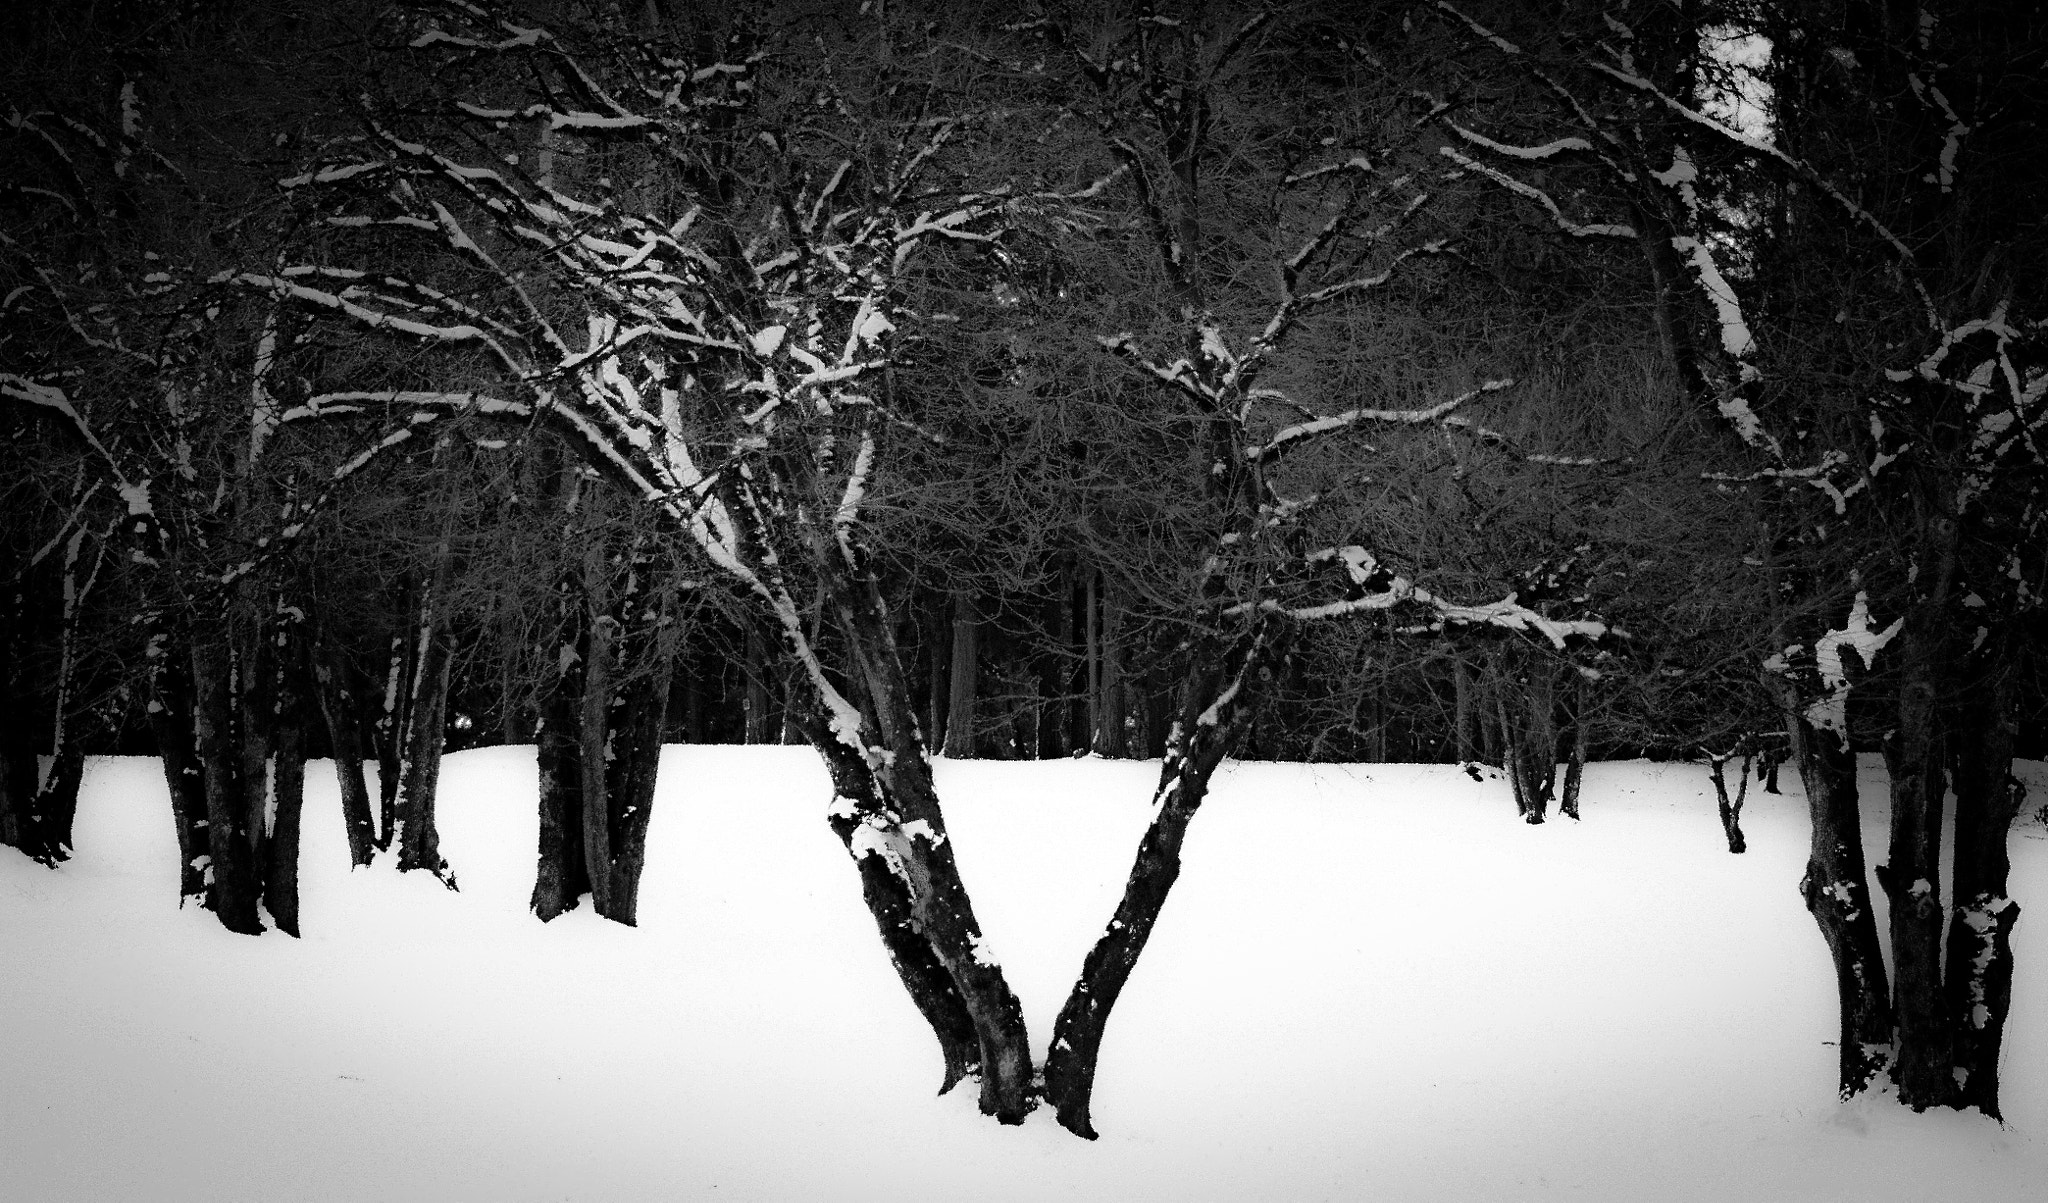 Nikon D500 + Nikon AF-S Nikkor 85mm F1.8G sample photo. Winter landscape photography